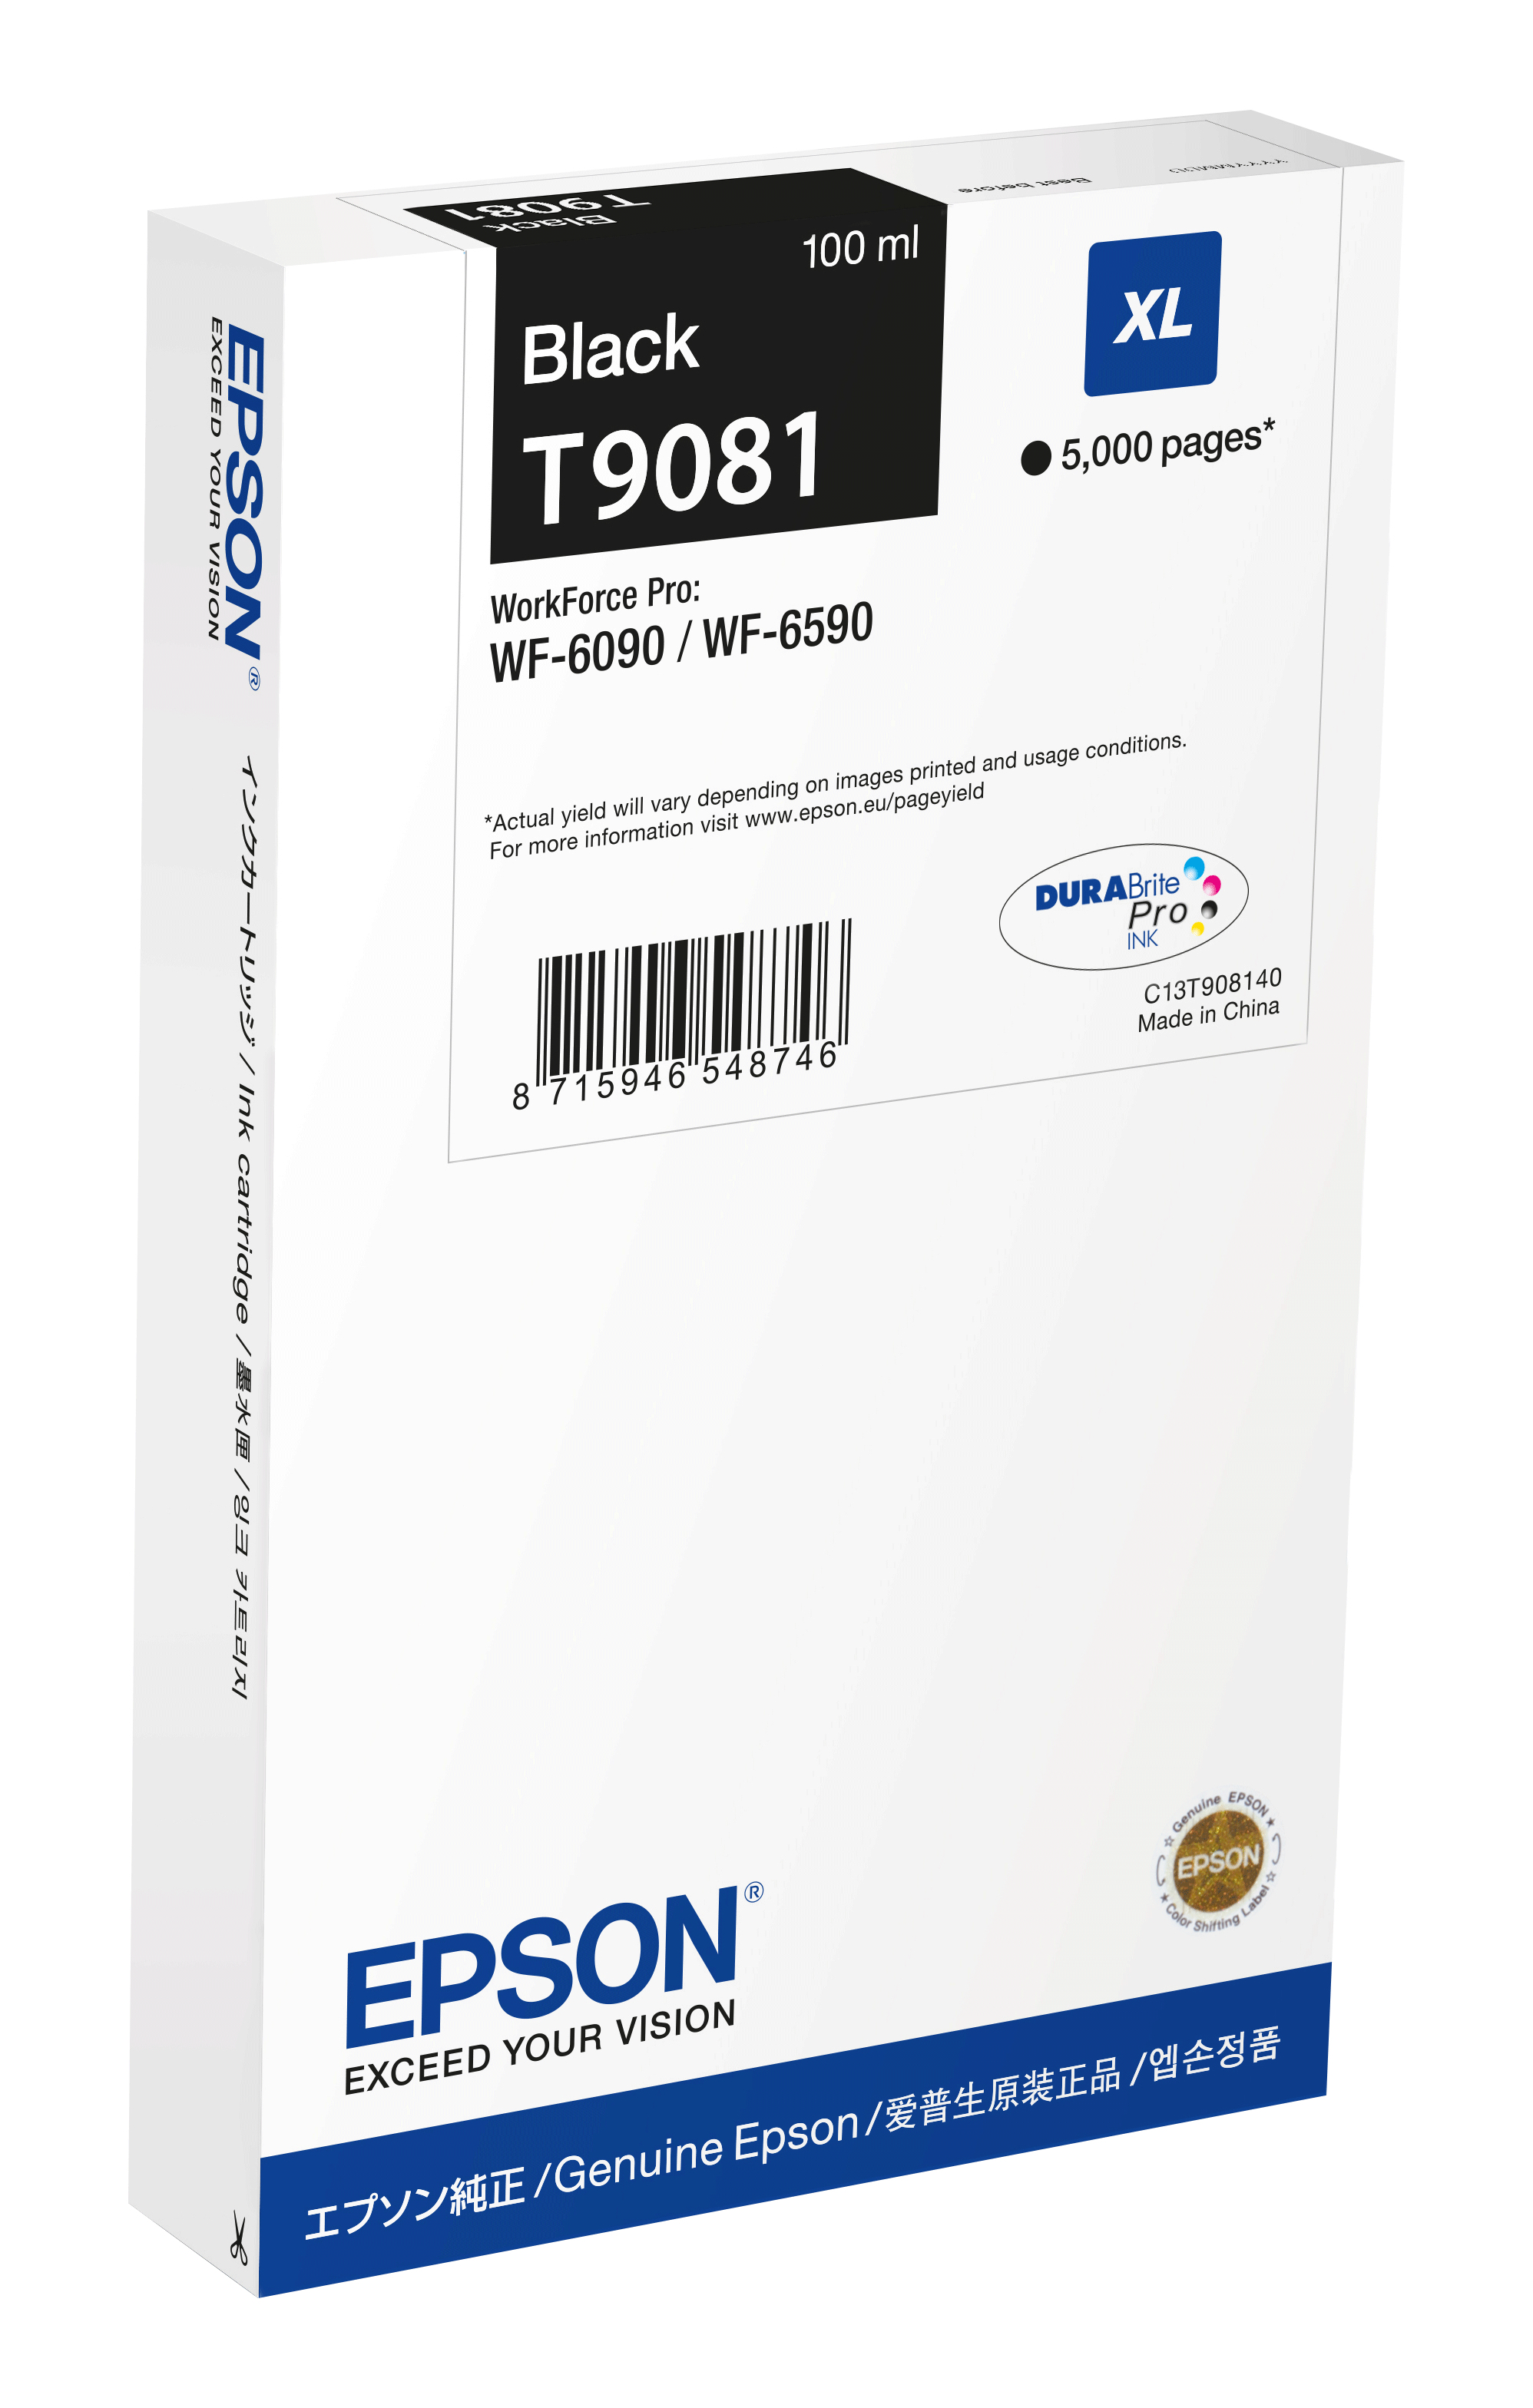 Epson T9081 - 100 ml - Größe XL - Schwarz - Original